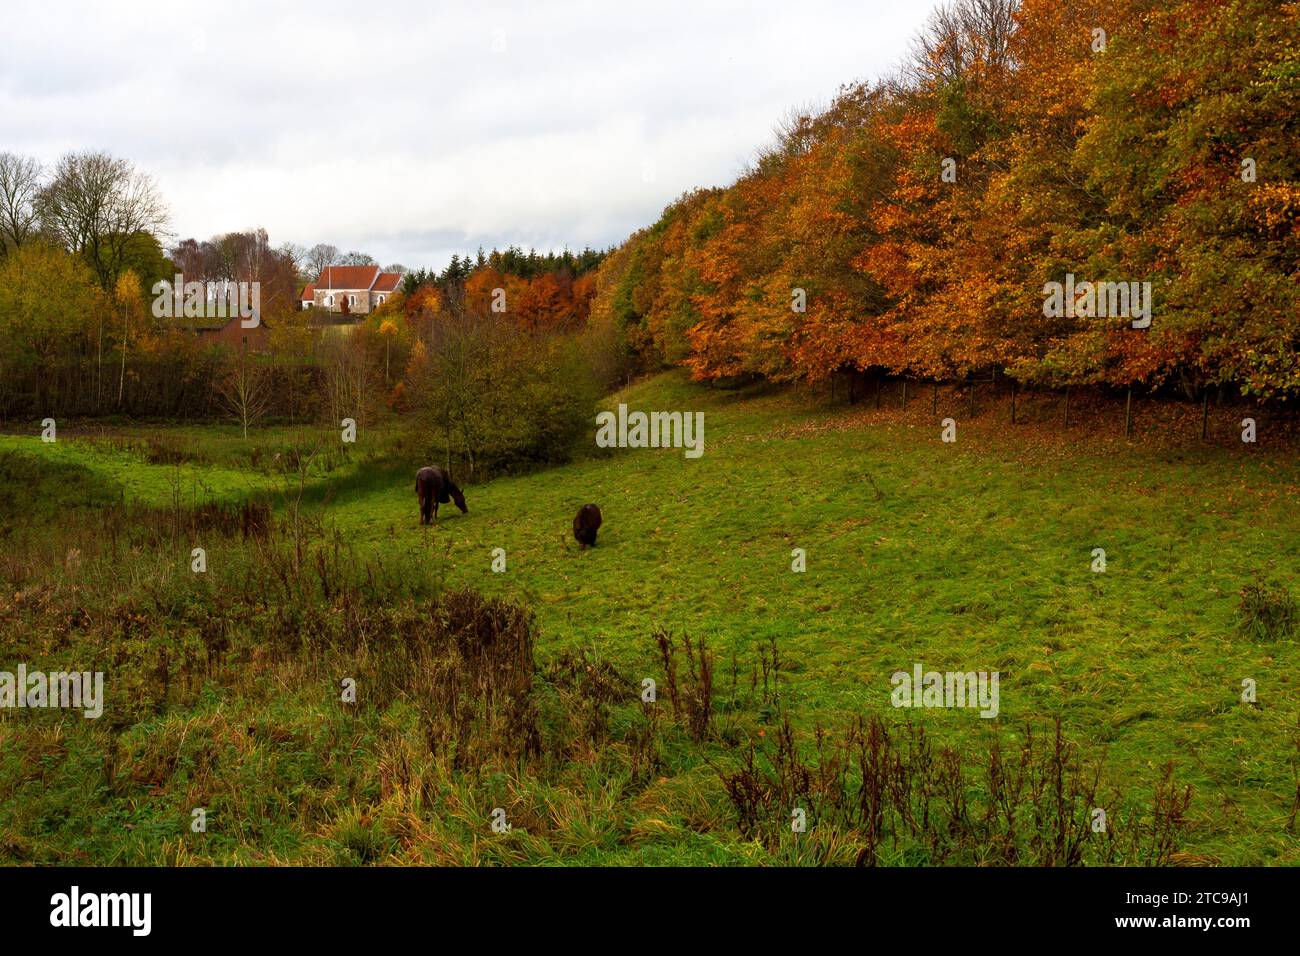 Erba ancora verde per i cavalli mentre gli alberi assumono i molti colori dell'autunno. Nella chiesa di fondo del Medioevo nel villaggio di Ska Foto Stock